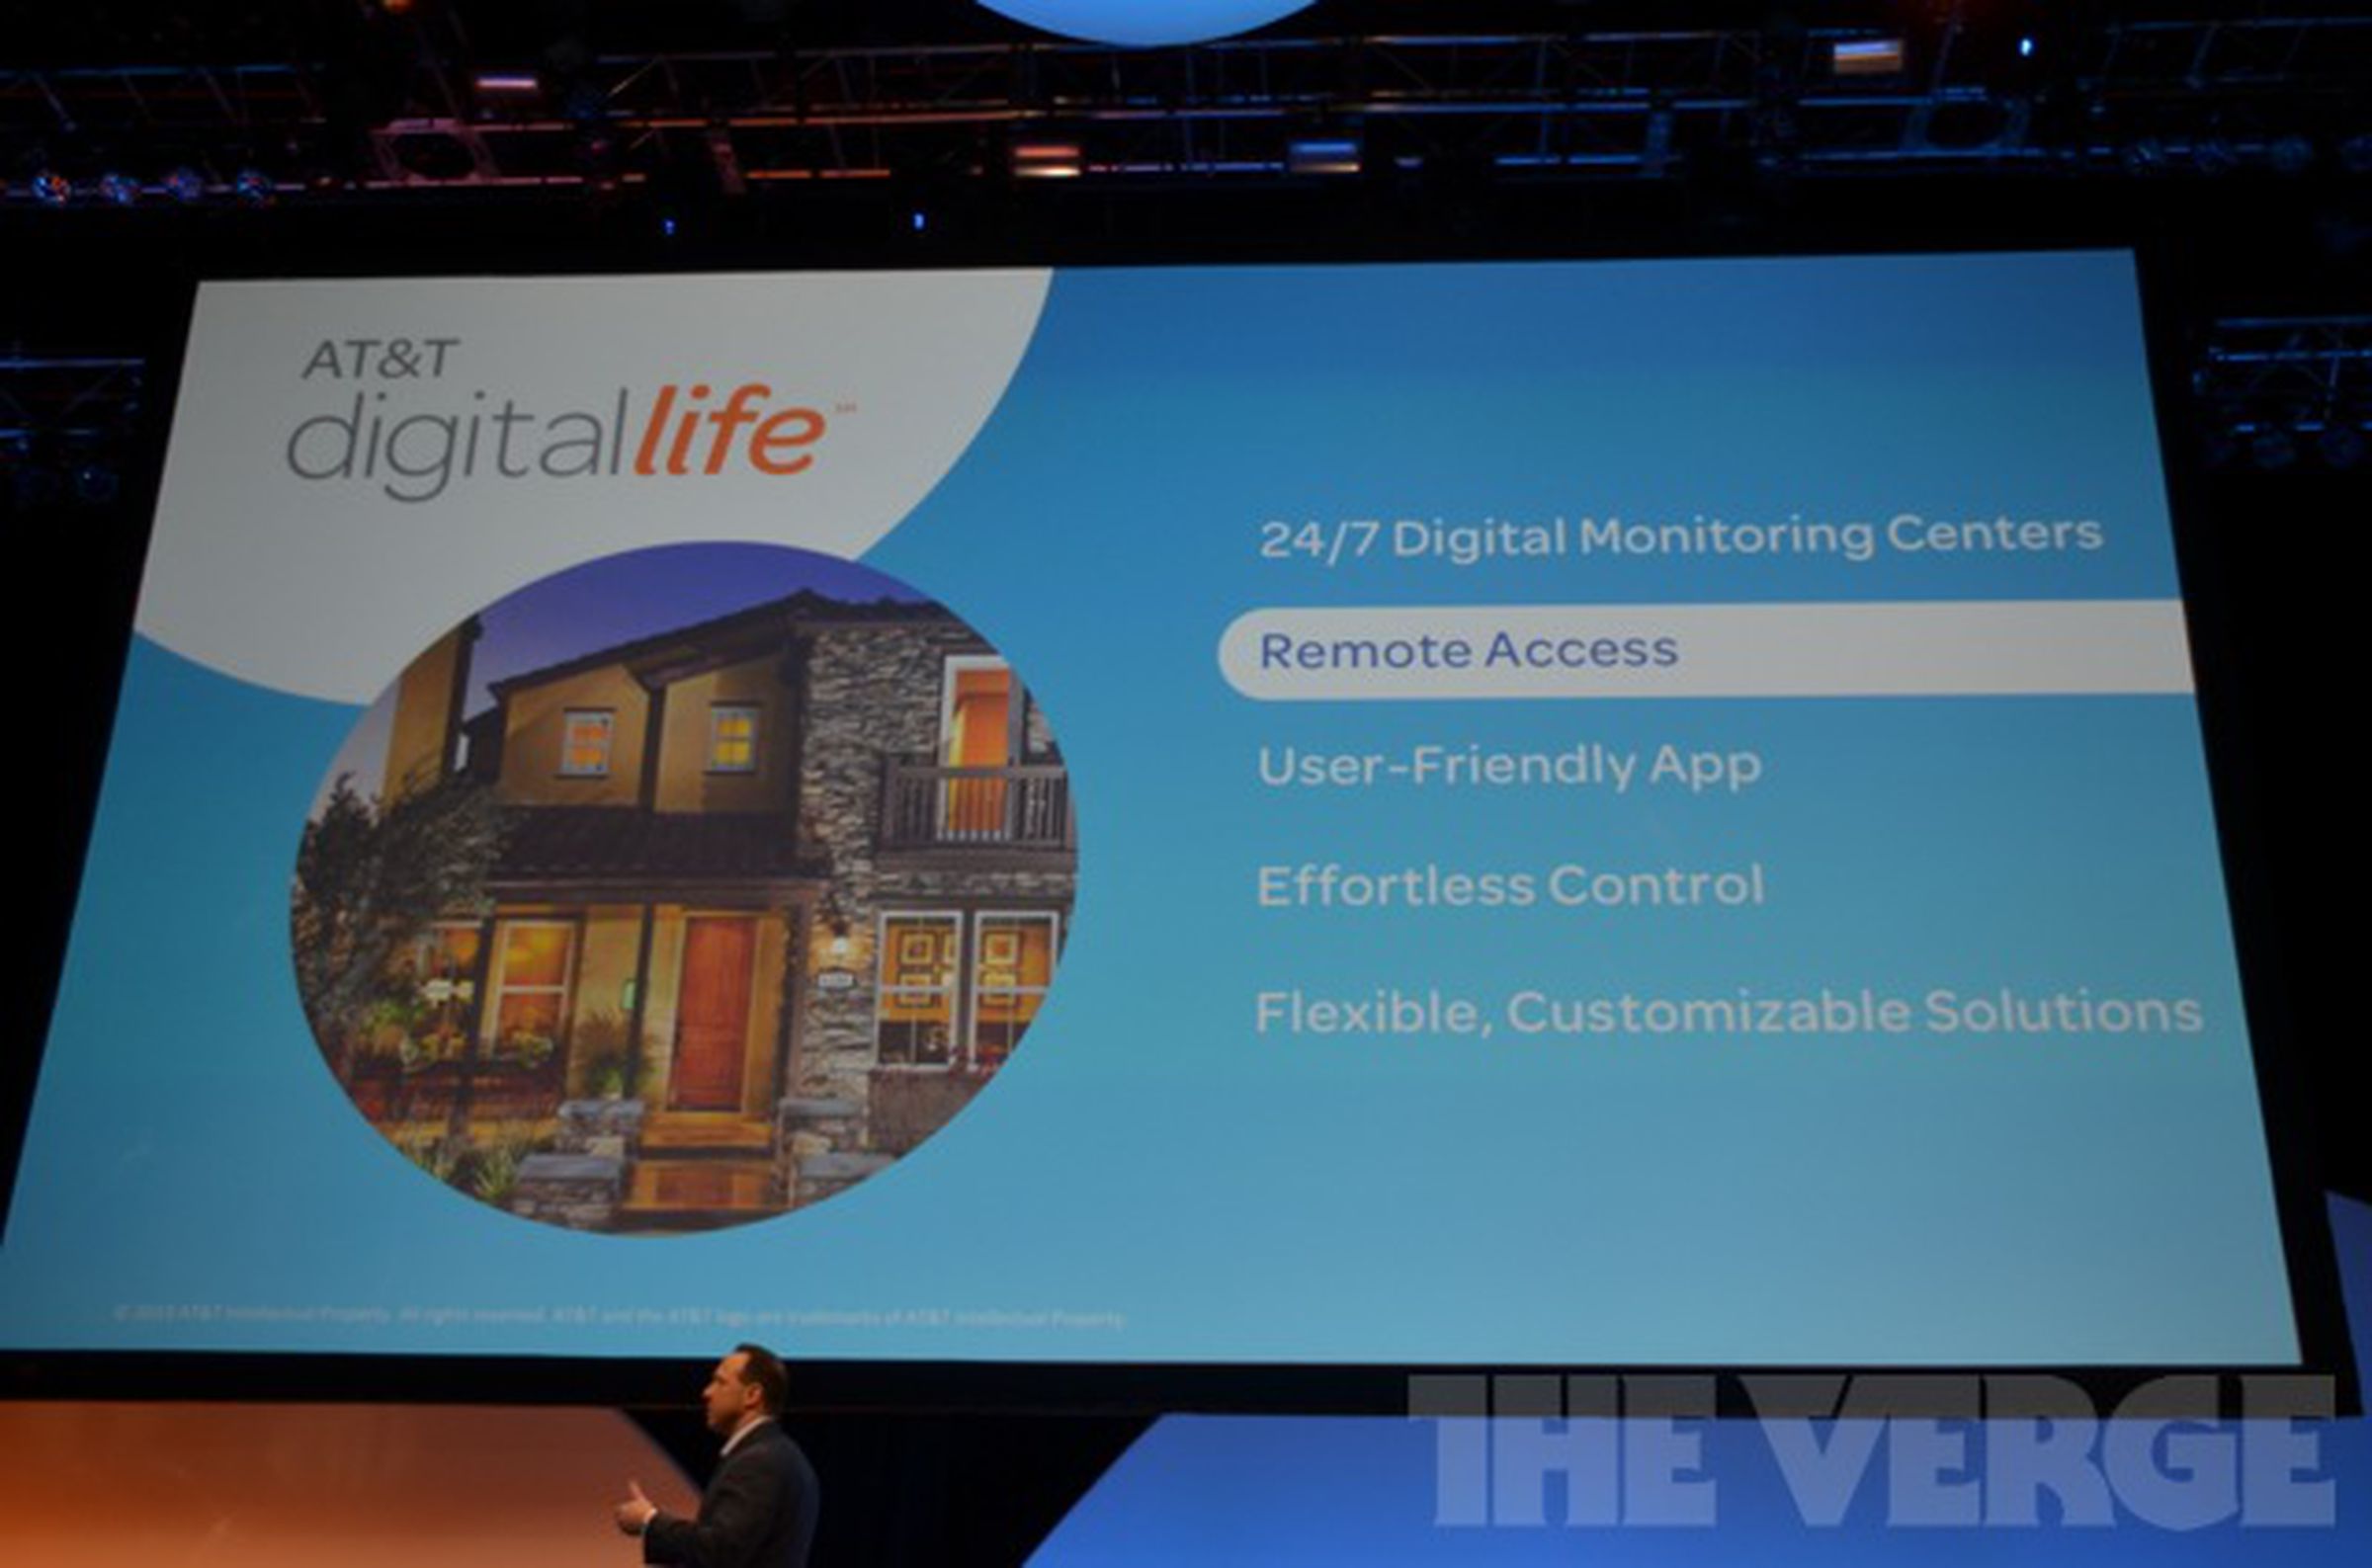 AT&T Digital Life slides